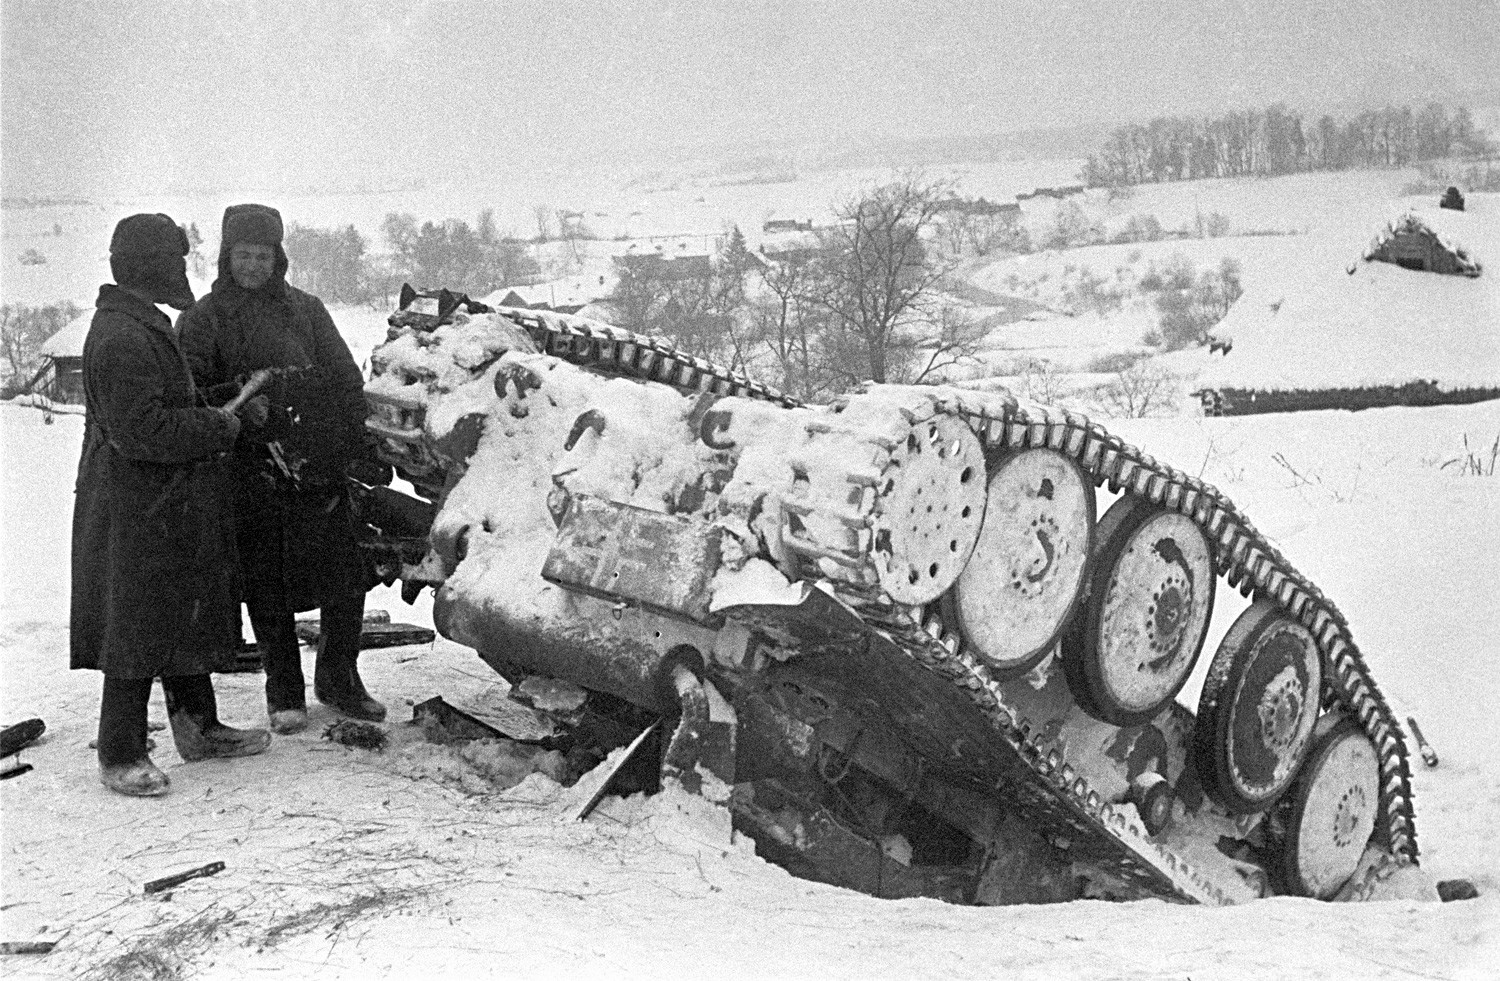 Dos soldatos soviéticos cerca de un tanque nazi destruido durante la Batalla de Mos
scú.